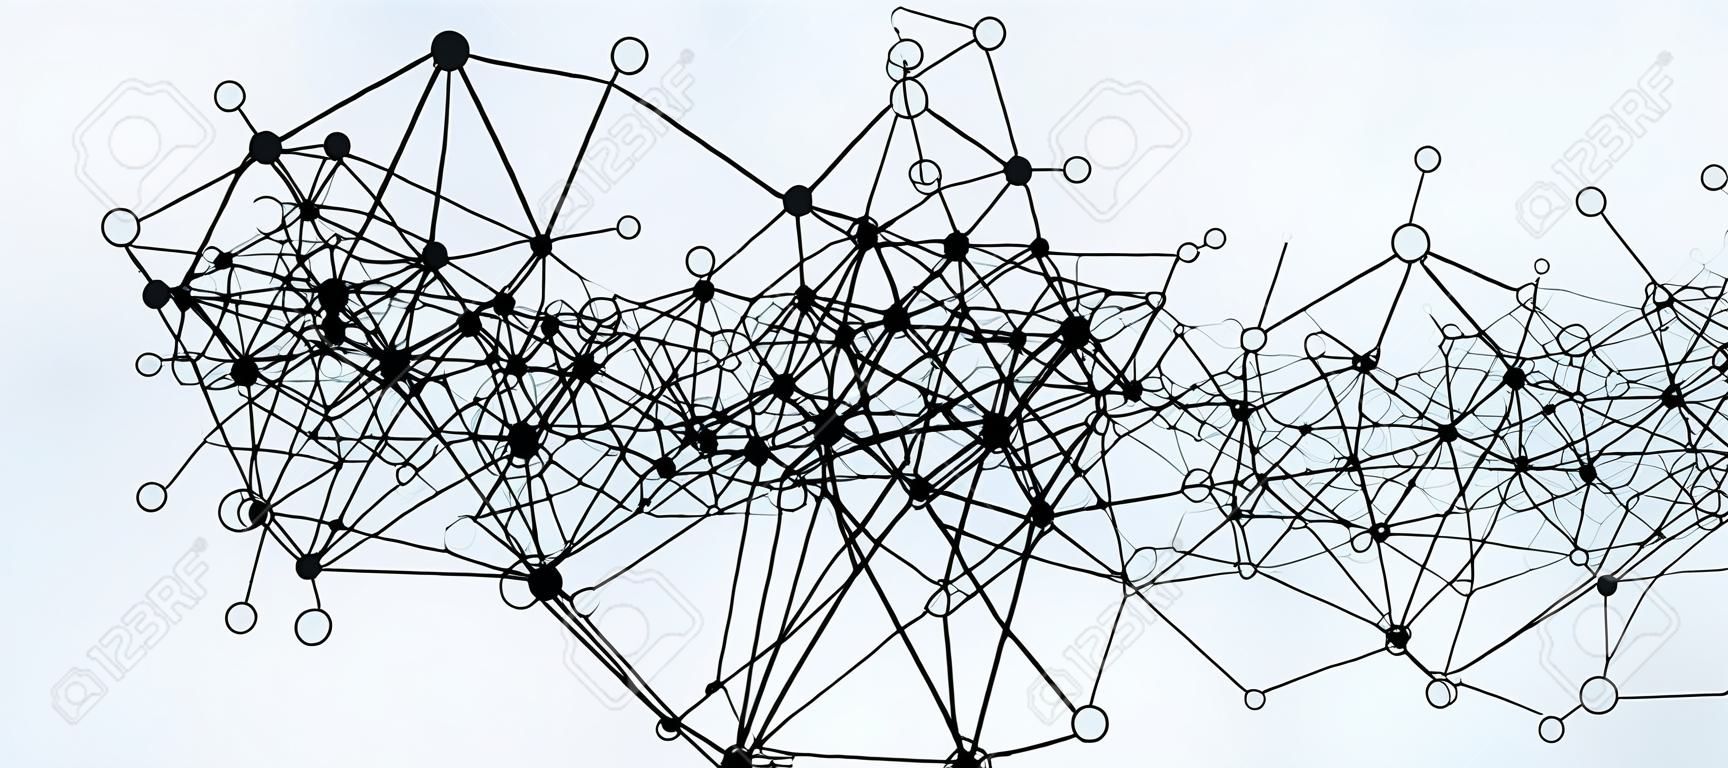 Réseau de données numériques moderne avec des lignes et des cercles